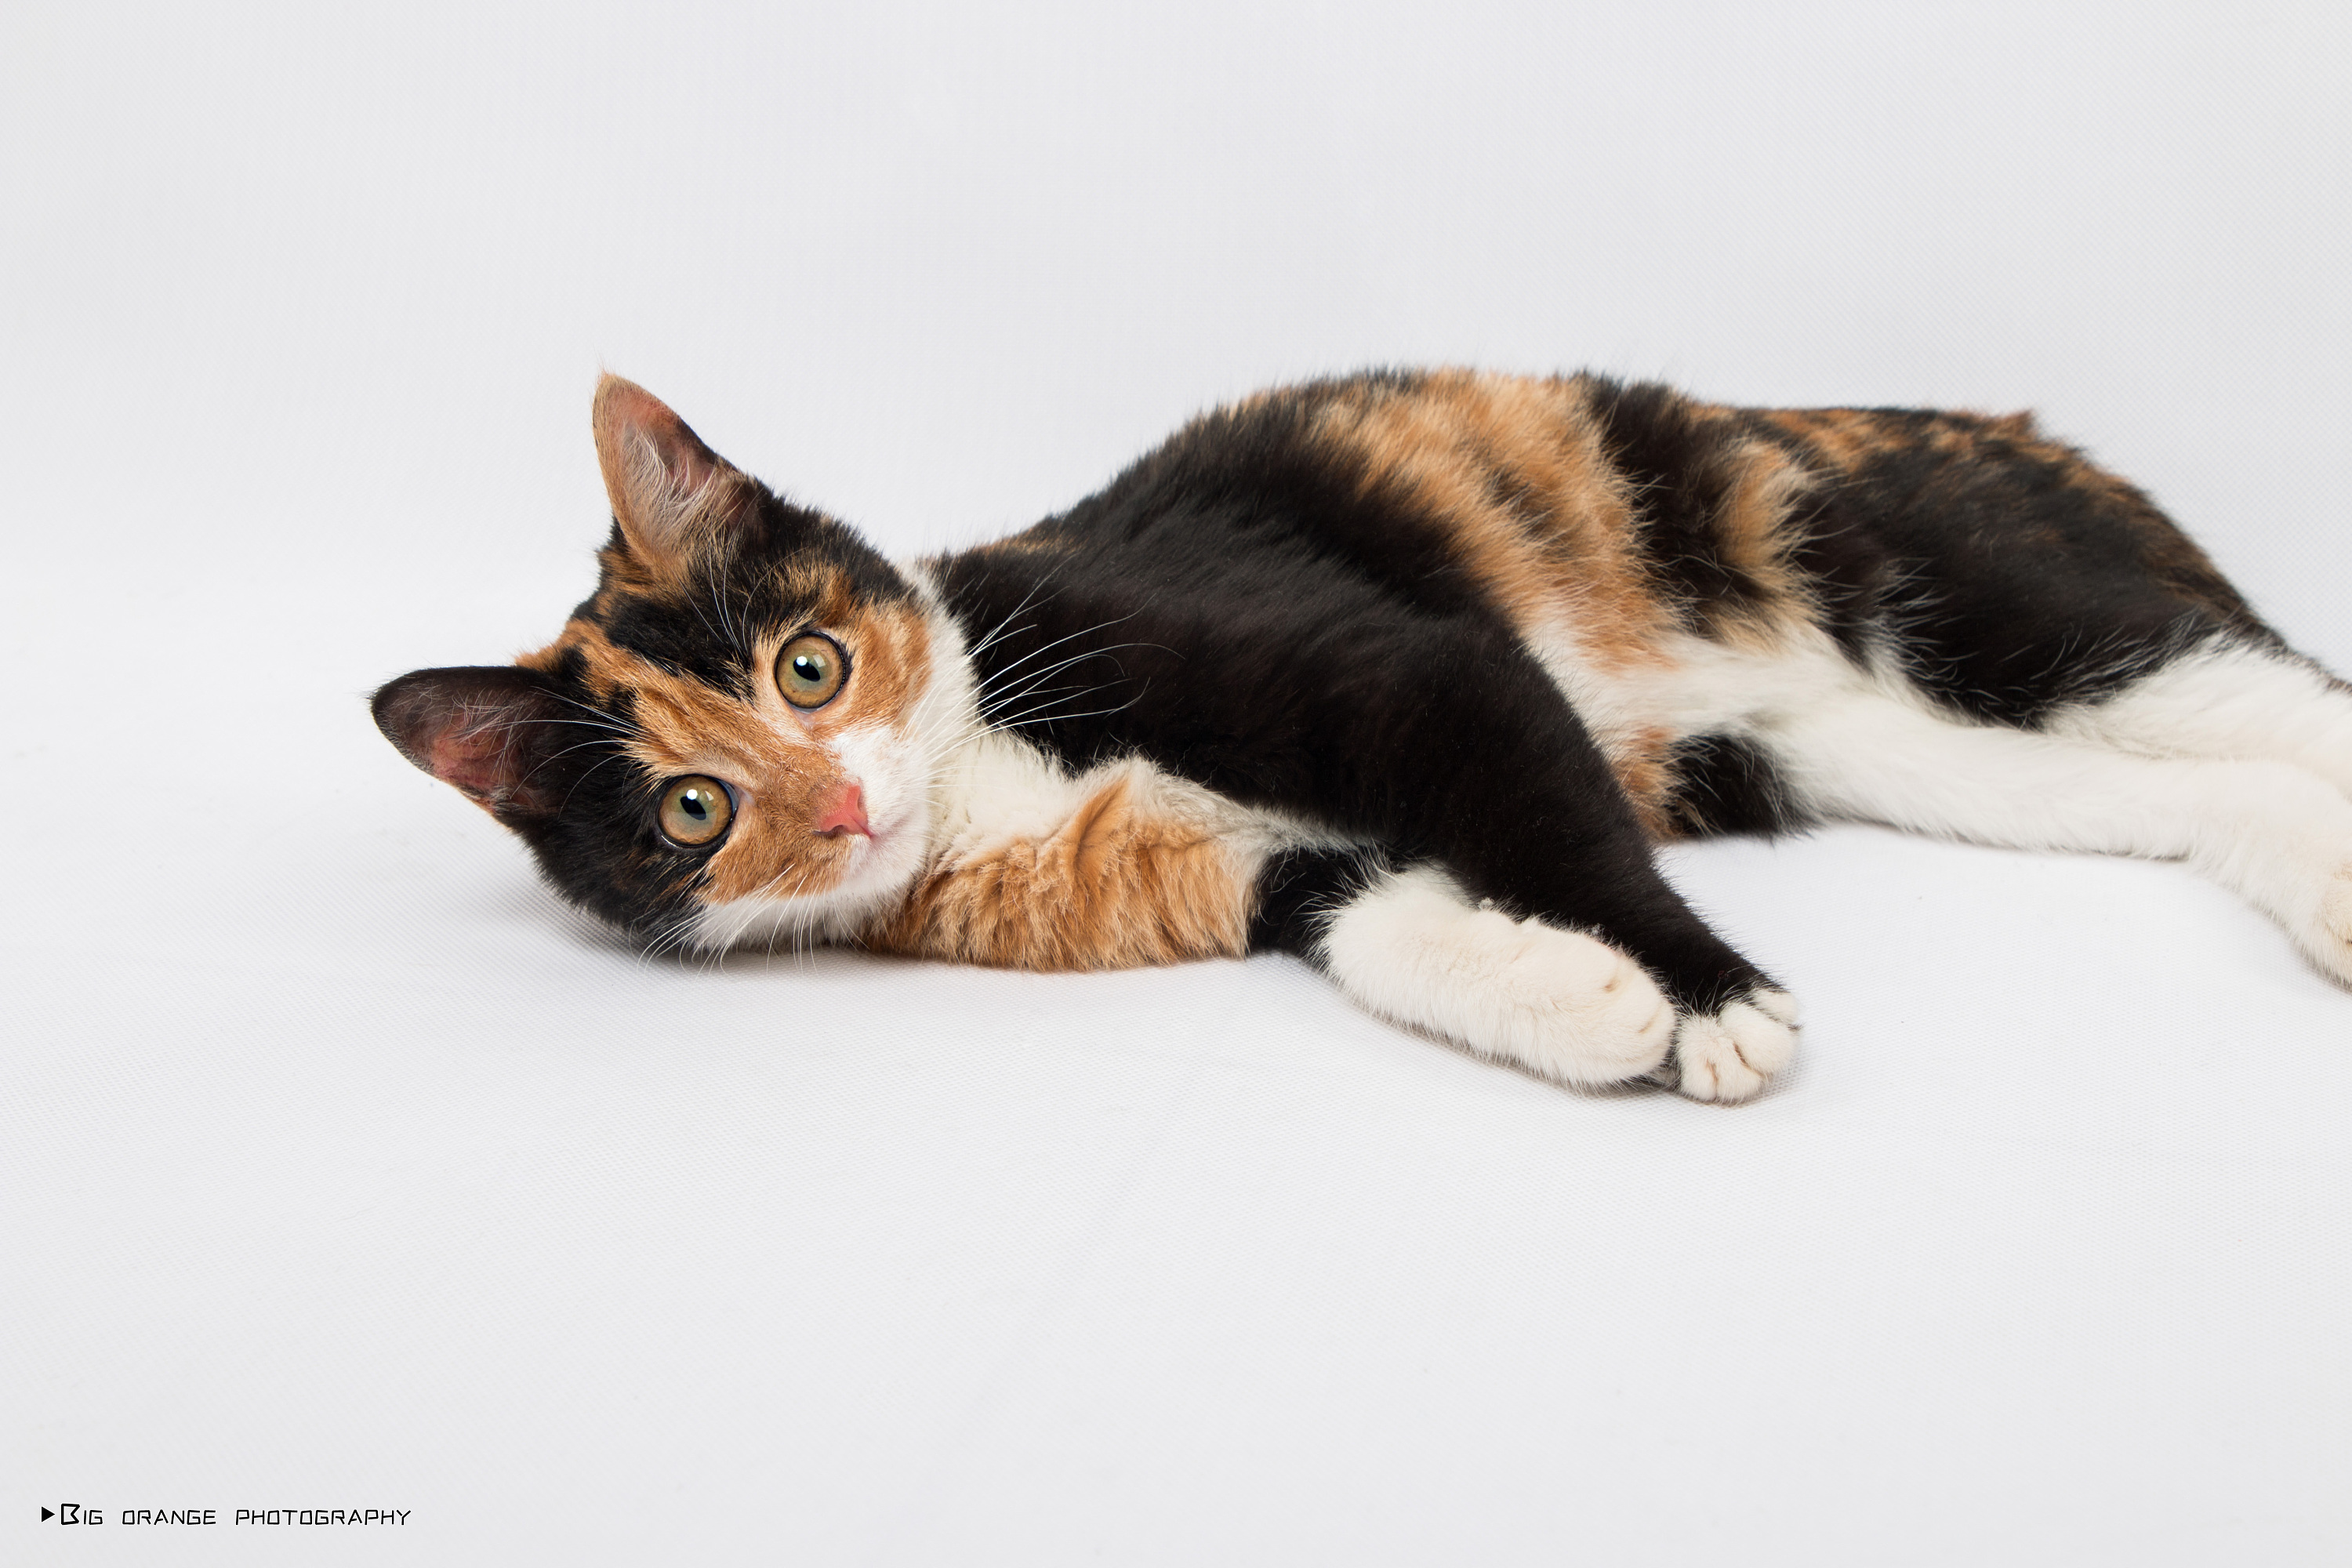 棕色条纹猫的垂直肖像 库存图片. 图片 包括有 射击, 敌意, 毛皮, 宠物, 垂直, 茴香, 镶边, 似猫 - 205231335